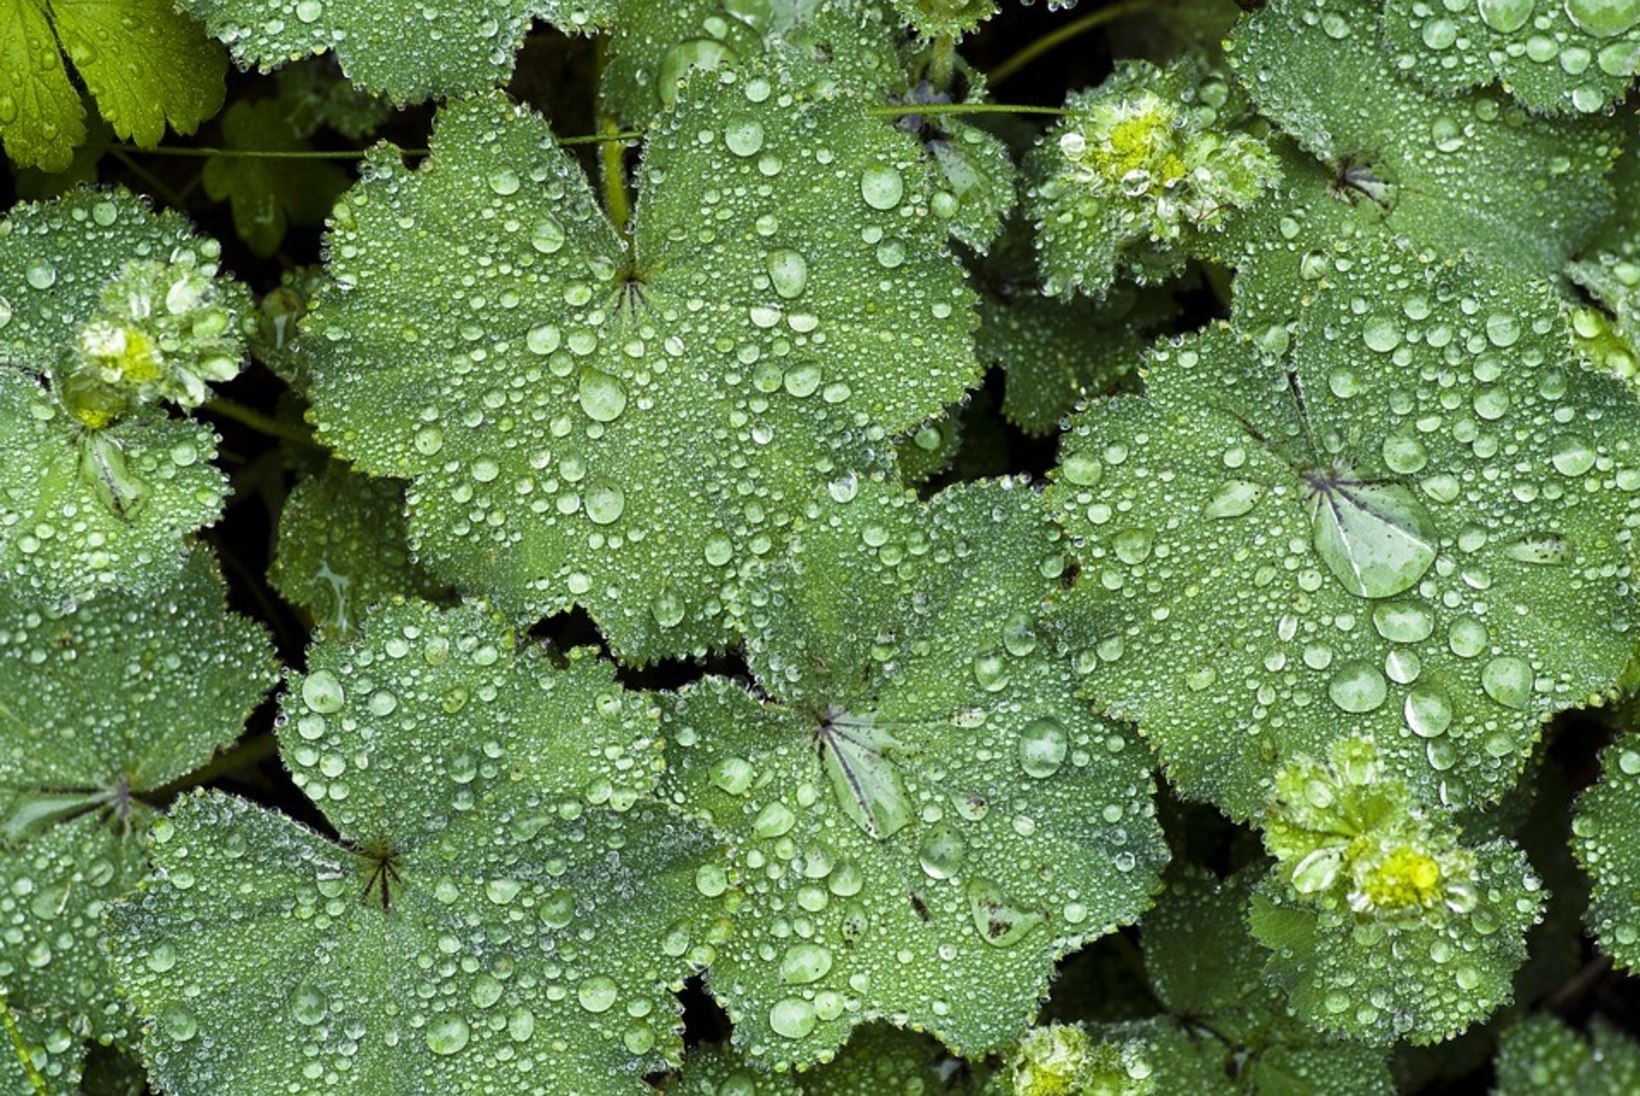 Imeline kortsleht: taim, mis vähendab valu, noorendab ja ravib